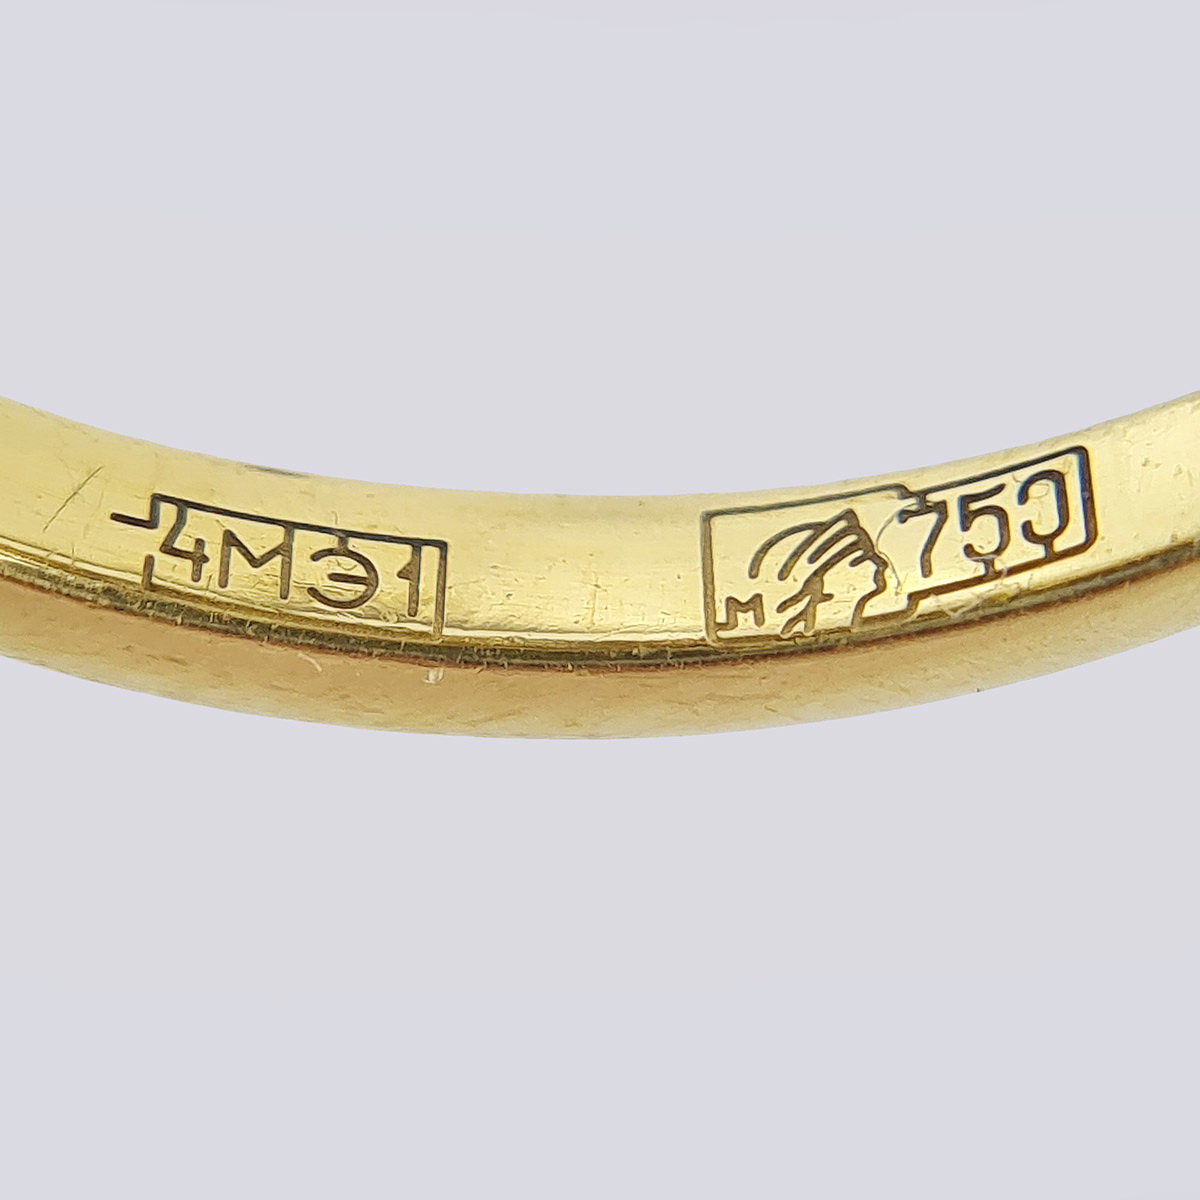 Кольцо из золота 750 пробы с хризолитом и бриллиантами